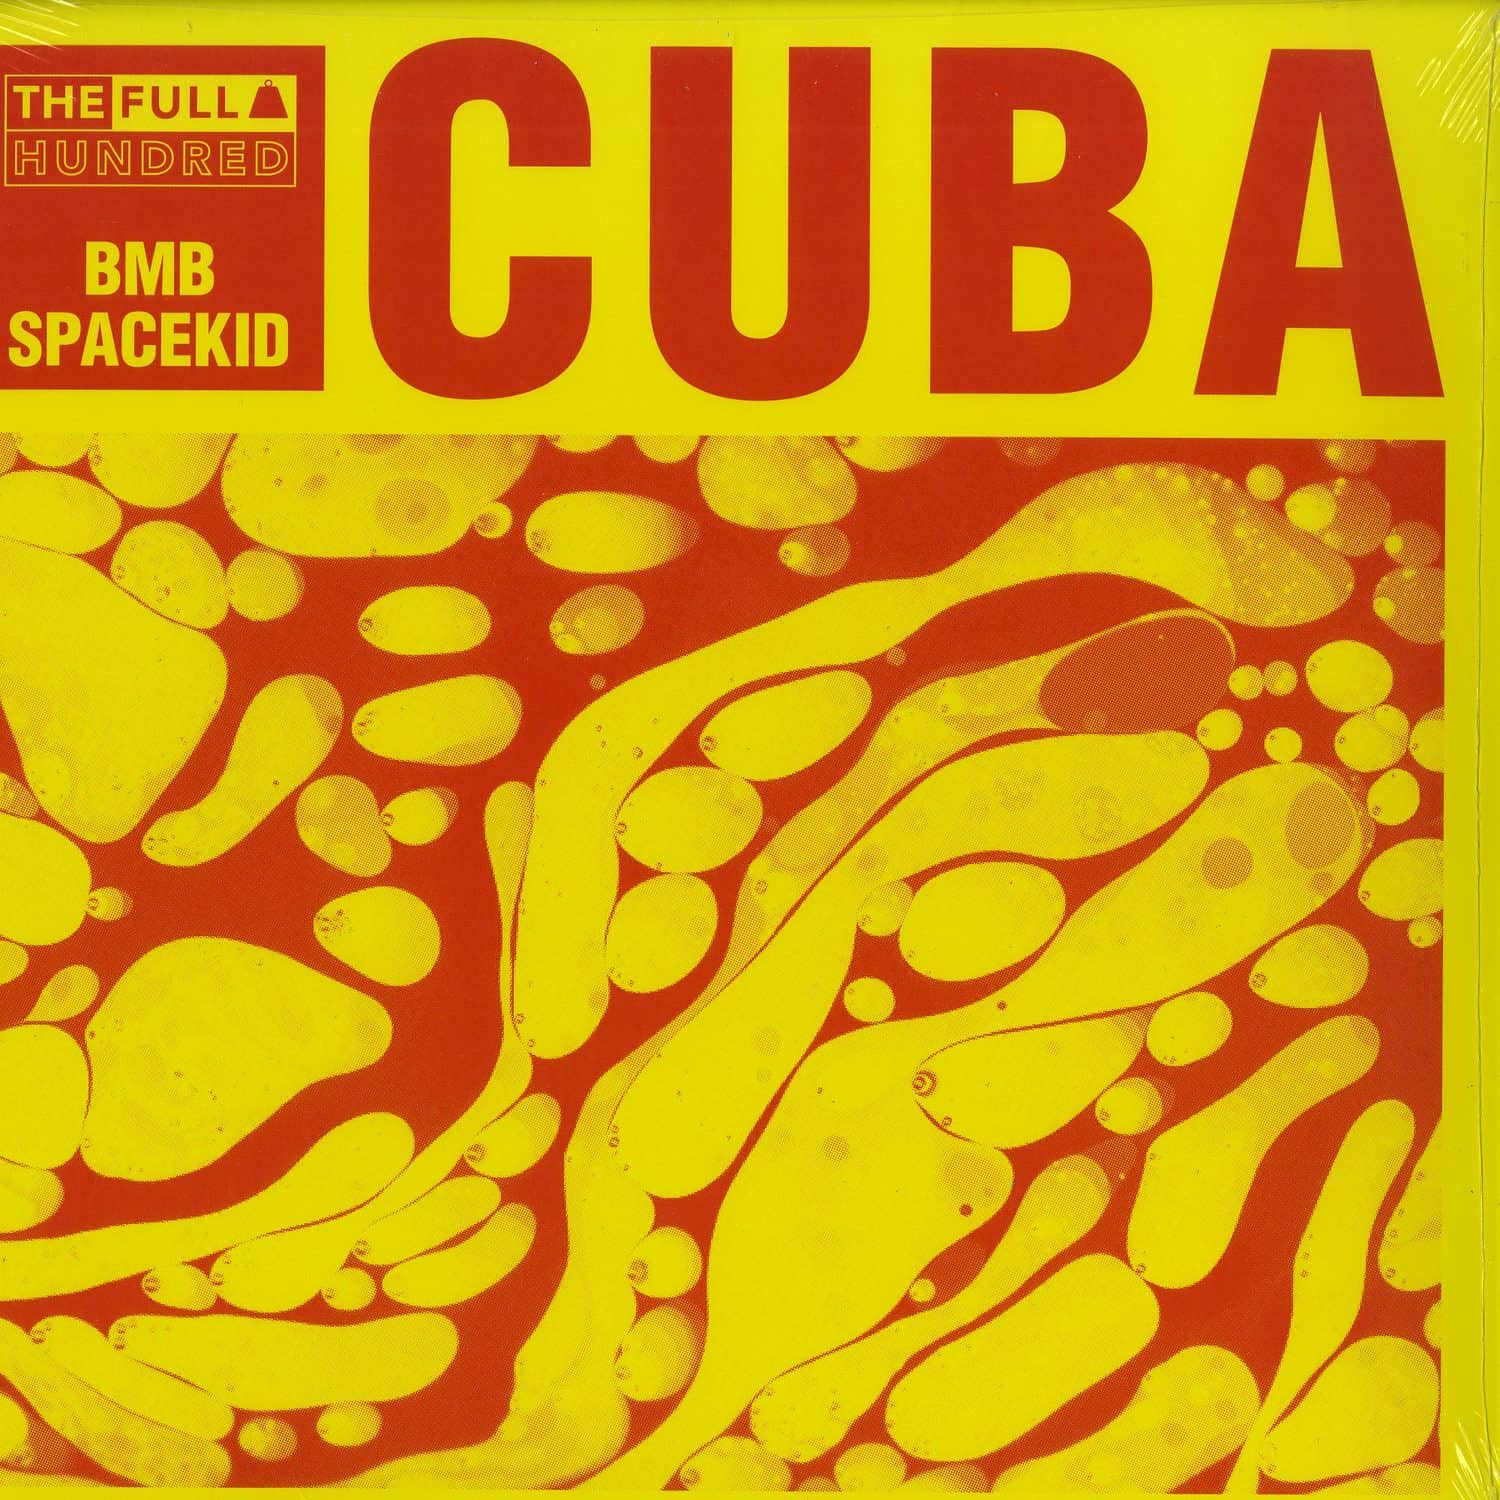 Bmb Spacekid - CUBA EP